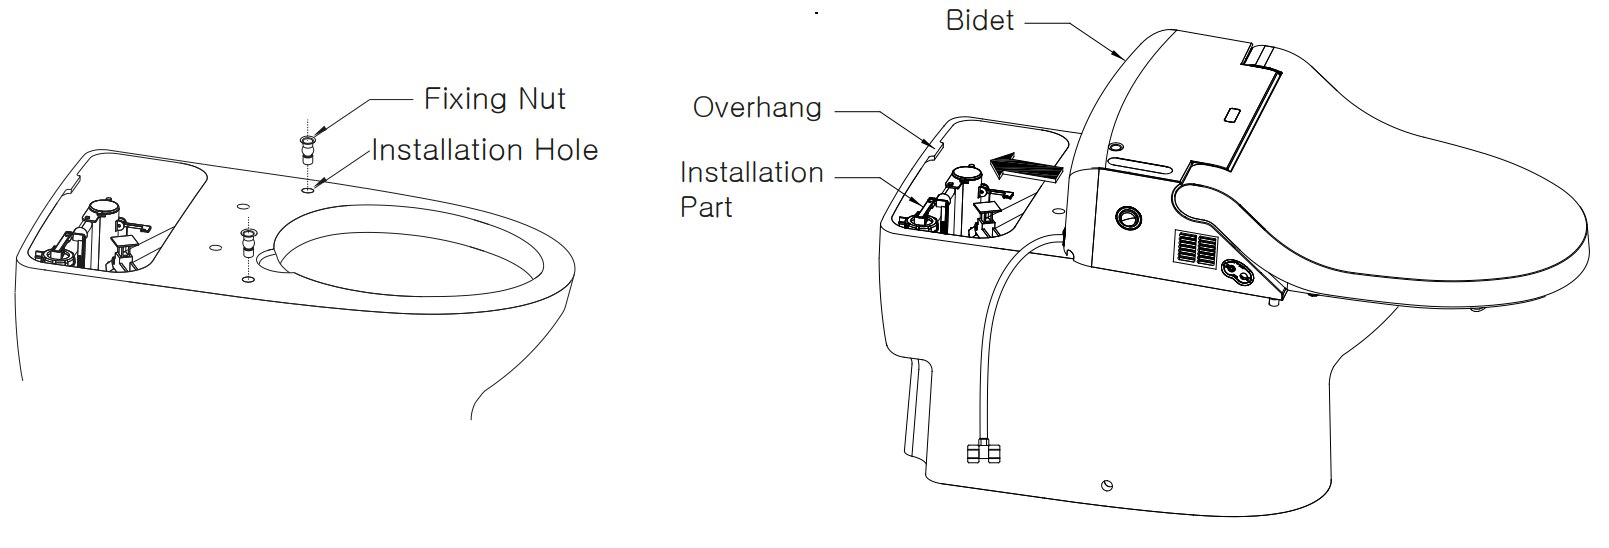 installing-the-bio-bidet-ib-835-seat.png